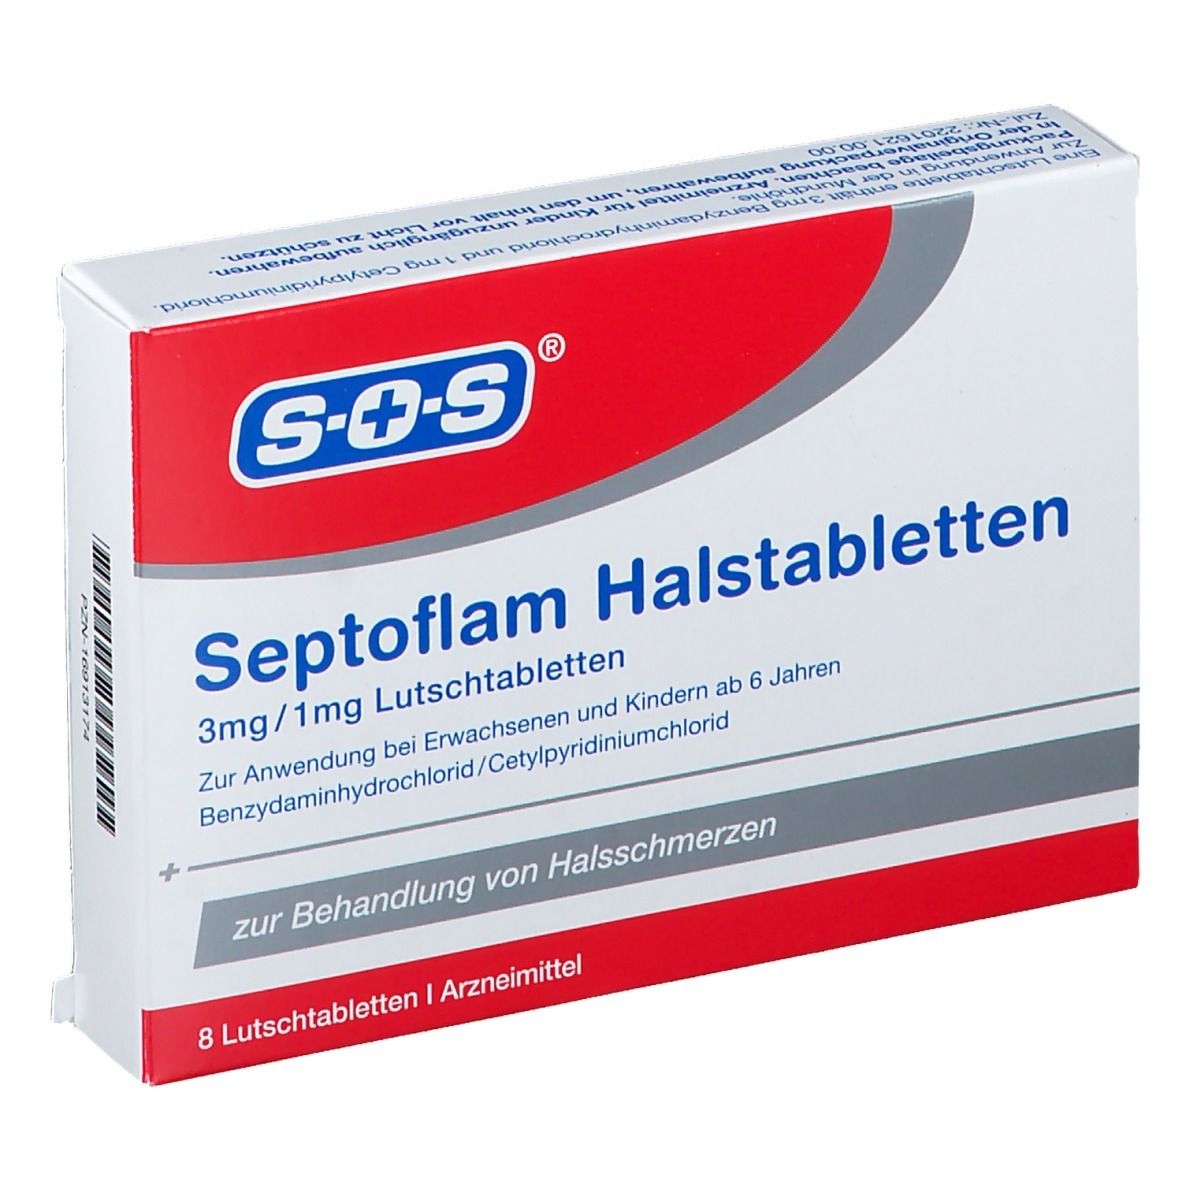 Septoflam Halstabletten